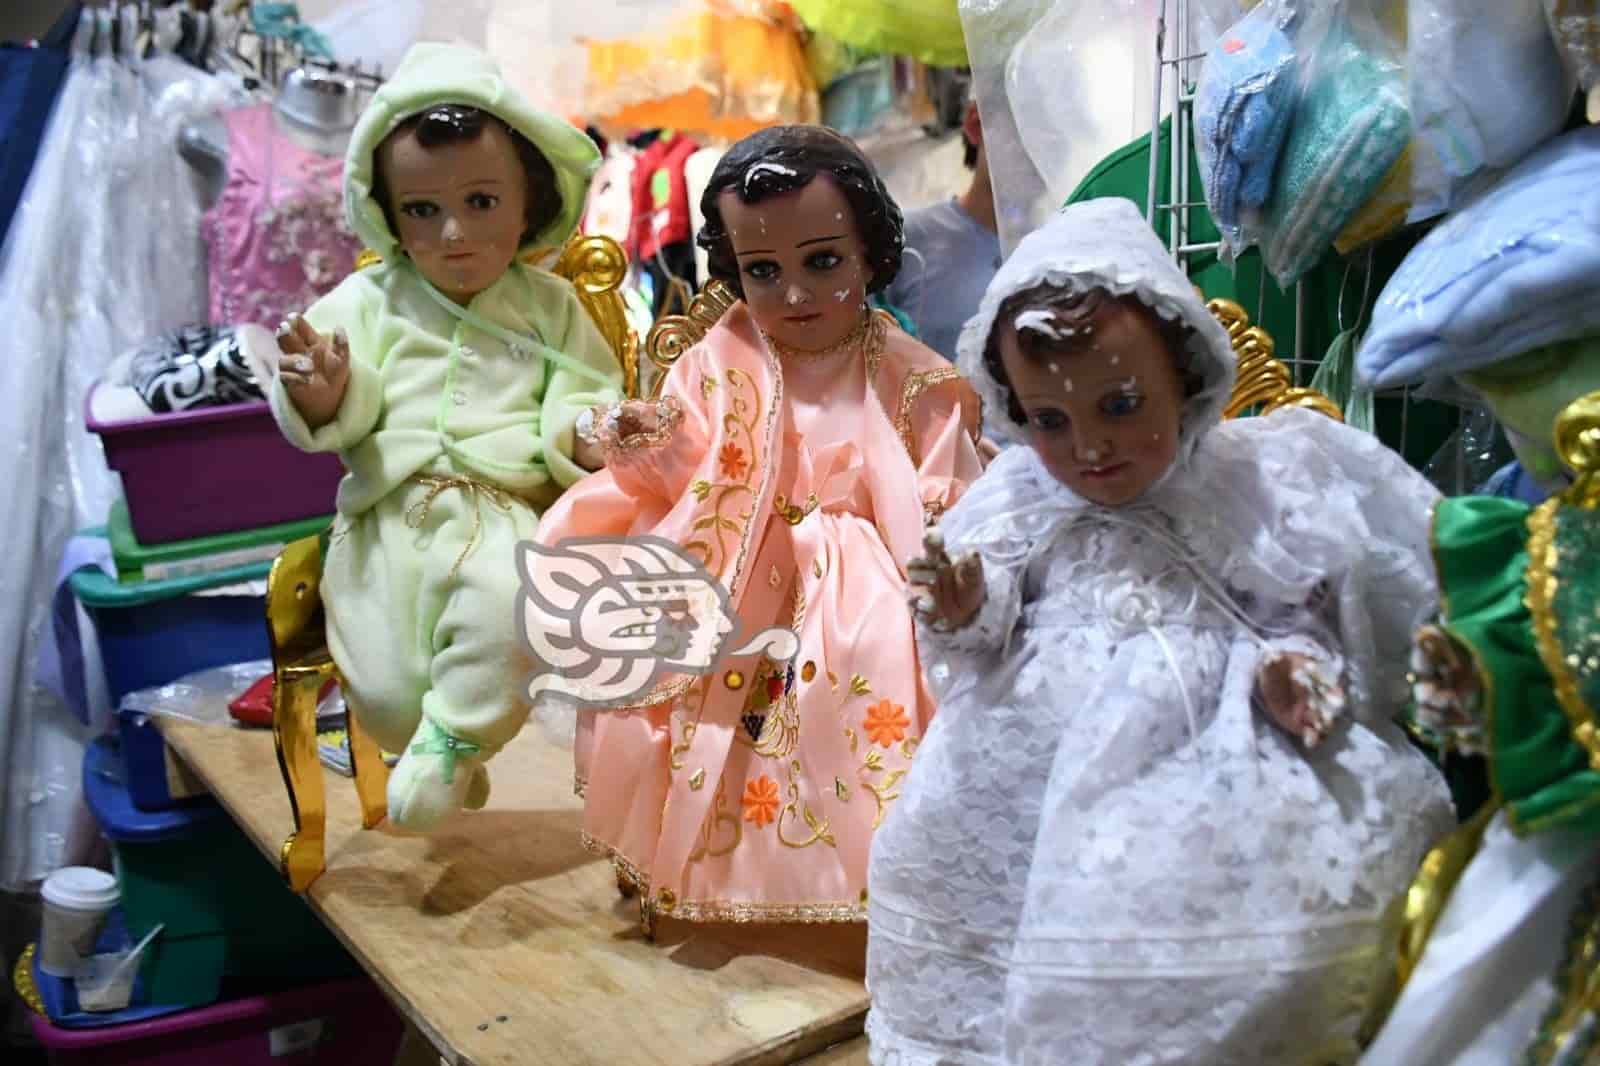 Vestir al niño Dios, tradición que sobrevive en Xalapa (+video)